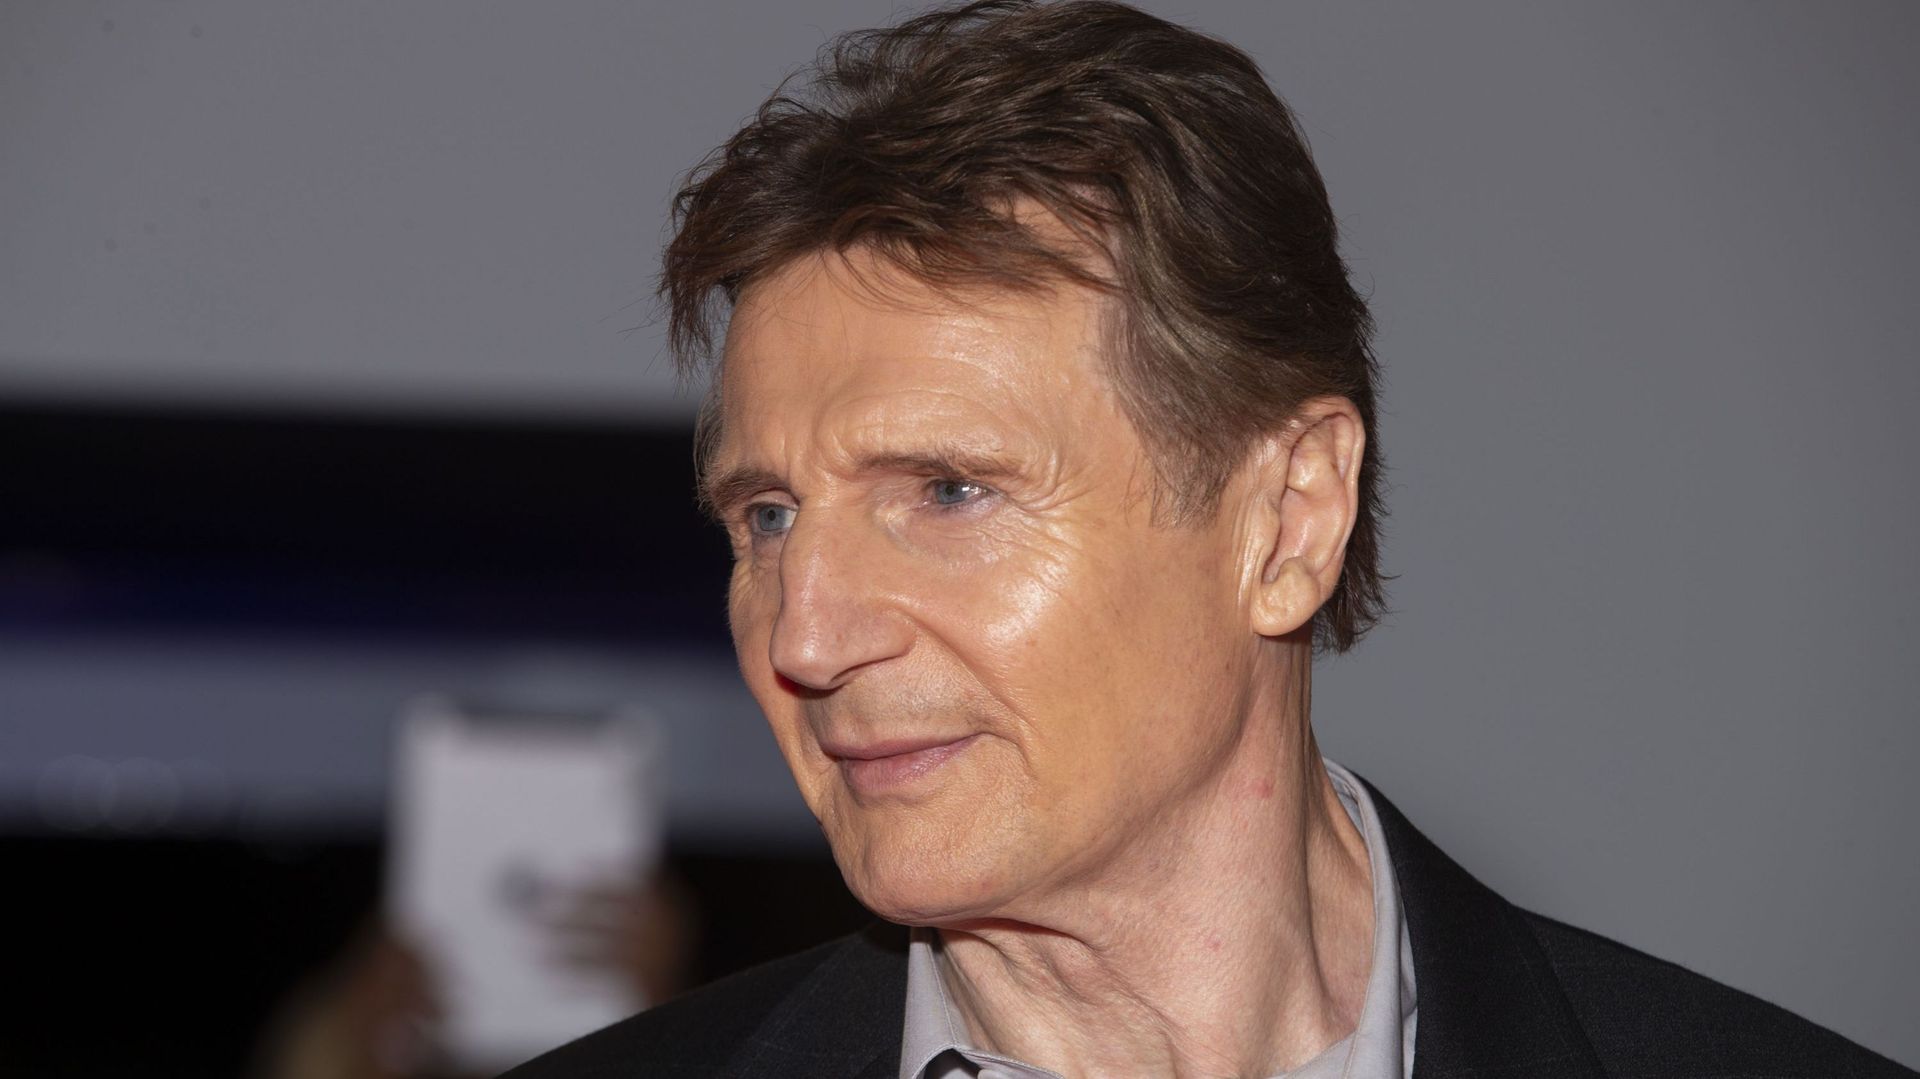 Le film belge "De zaak Alzheimer" va être adapté en anglais avec Liam Neeson